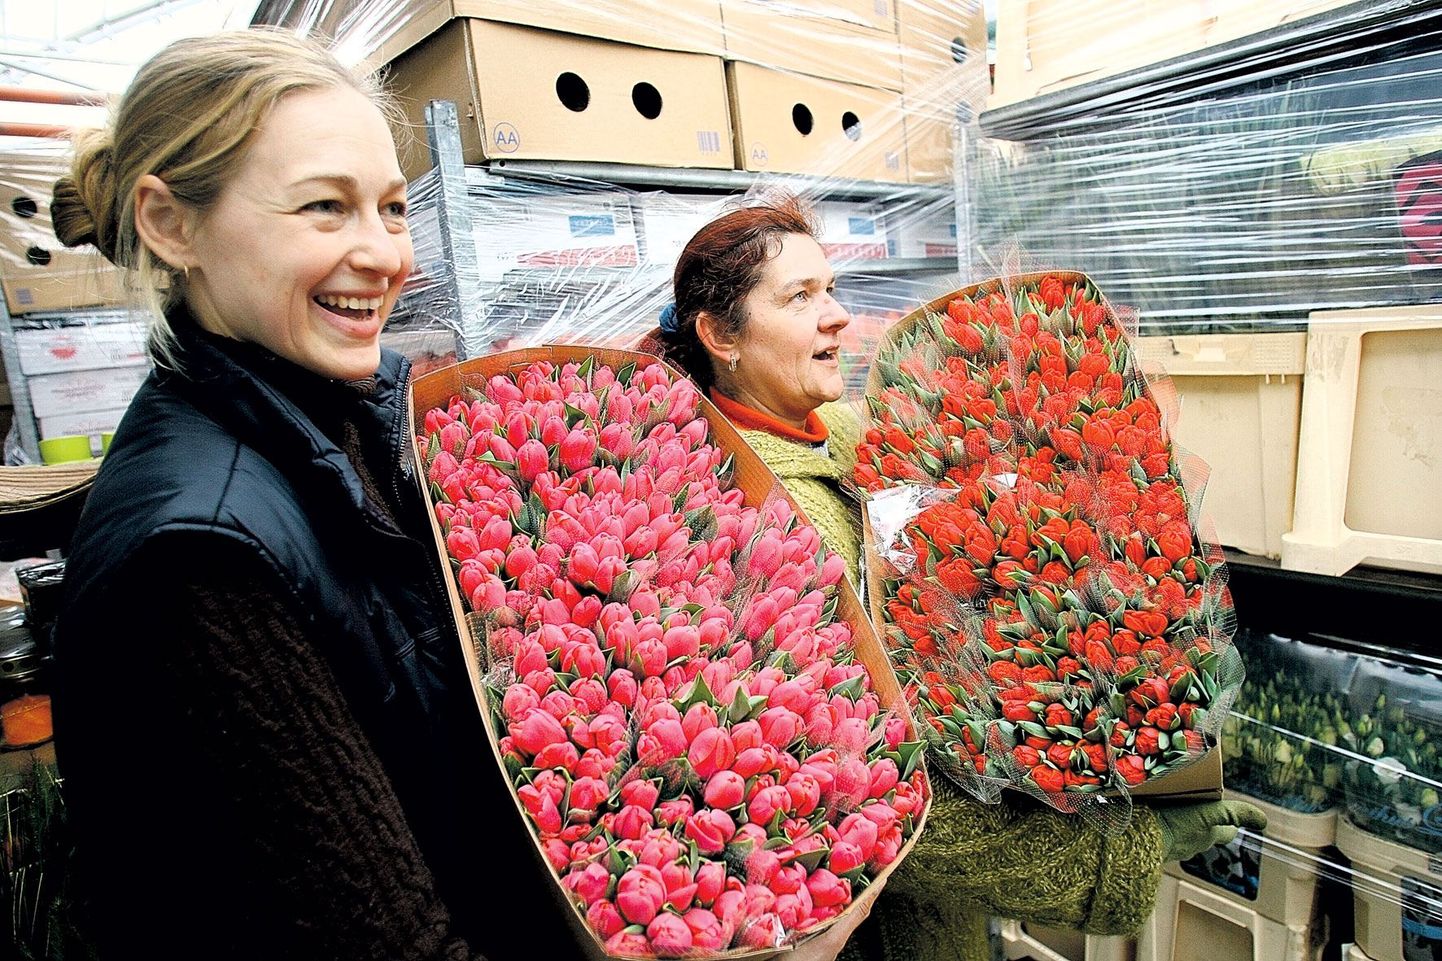 Jardini aianduskeskuse töötajad Liina Perve (vasakul) ja Karin Lepp tõid jahedast hoiuruumist välja meie naistepäeva lemmiklilled – tulbid. Jardinis puhkes sellel korral 8. märtsiks õitsele ligi 100 000 tulpi.